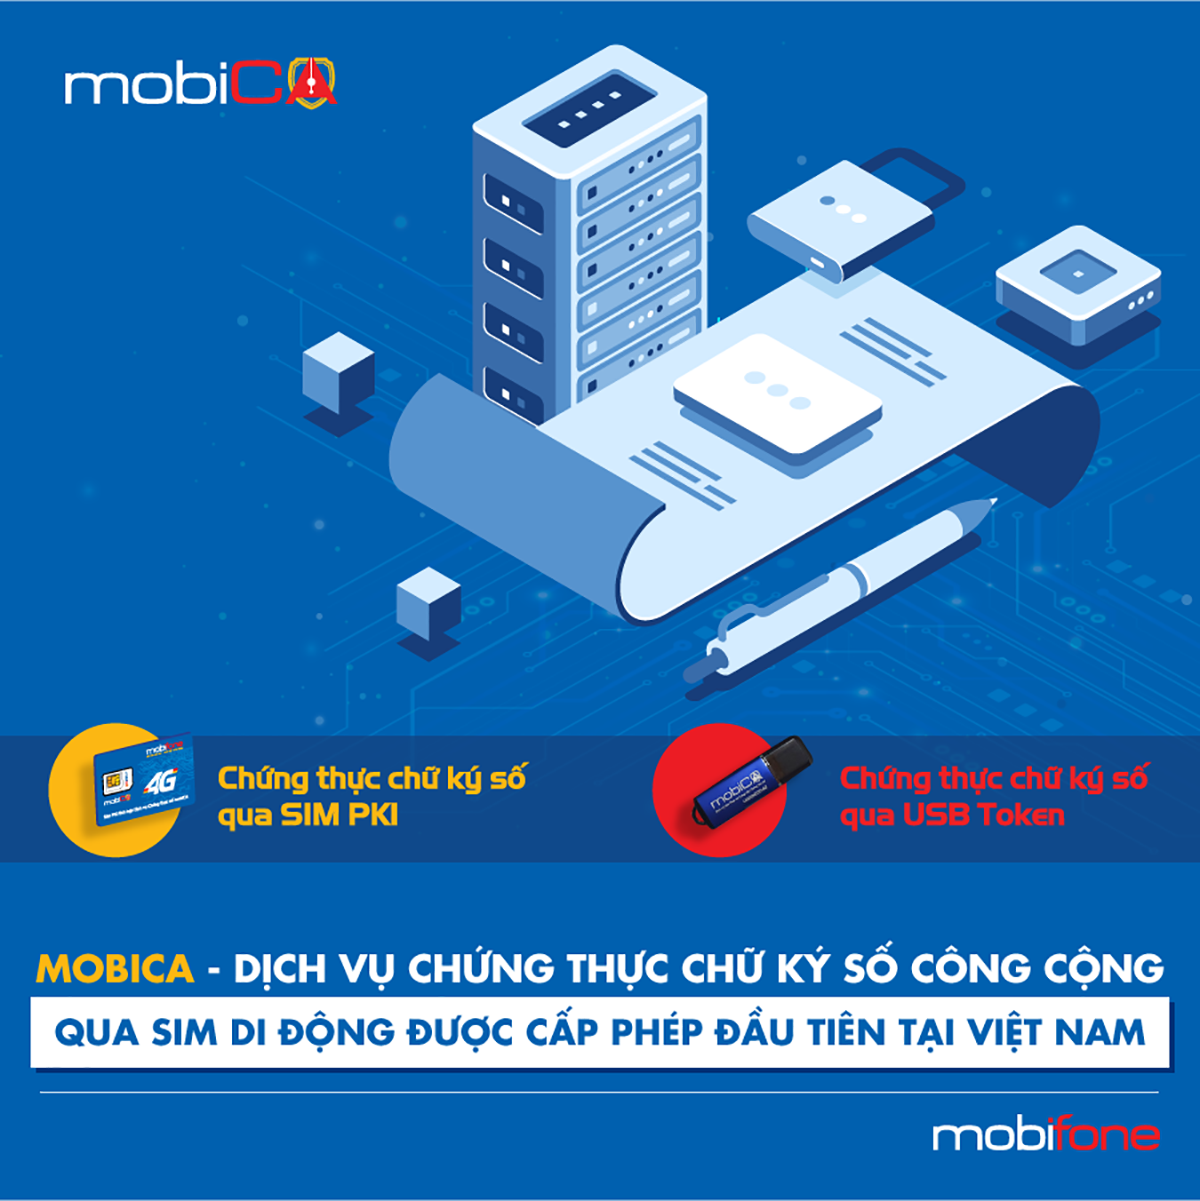 MobiFone hợp tác với New-Telecom cung cấp dịch vụ chứng thực chữ ký số công cộng